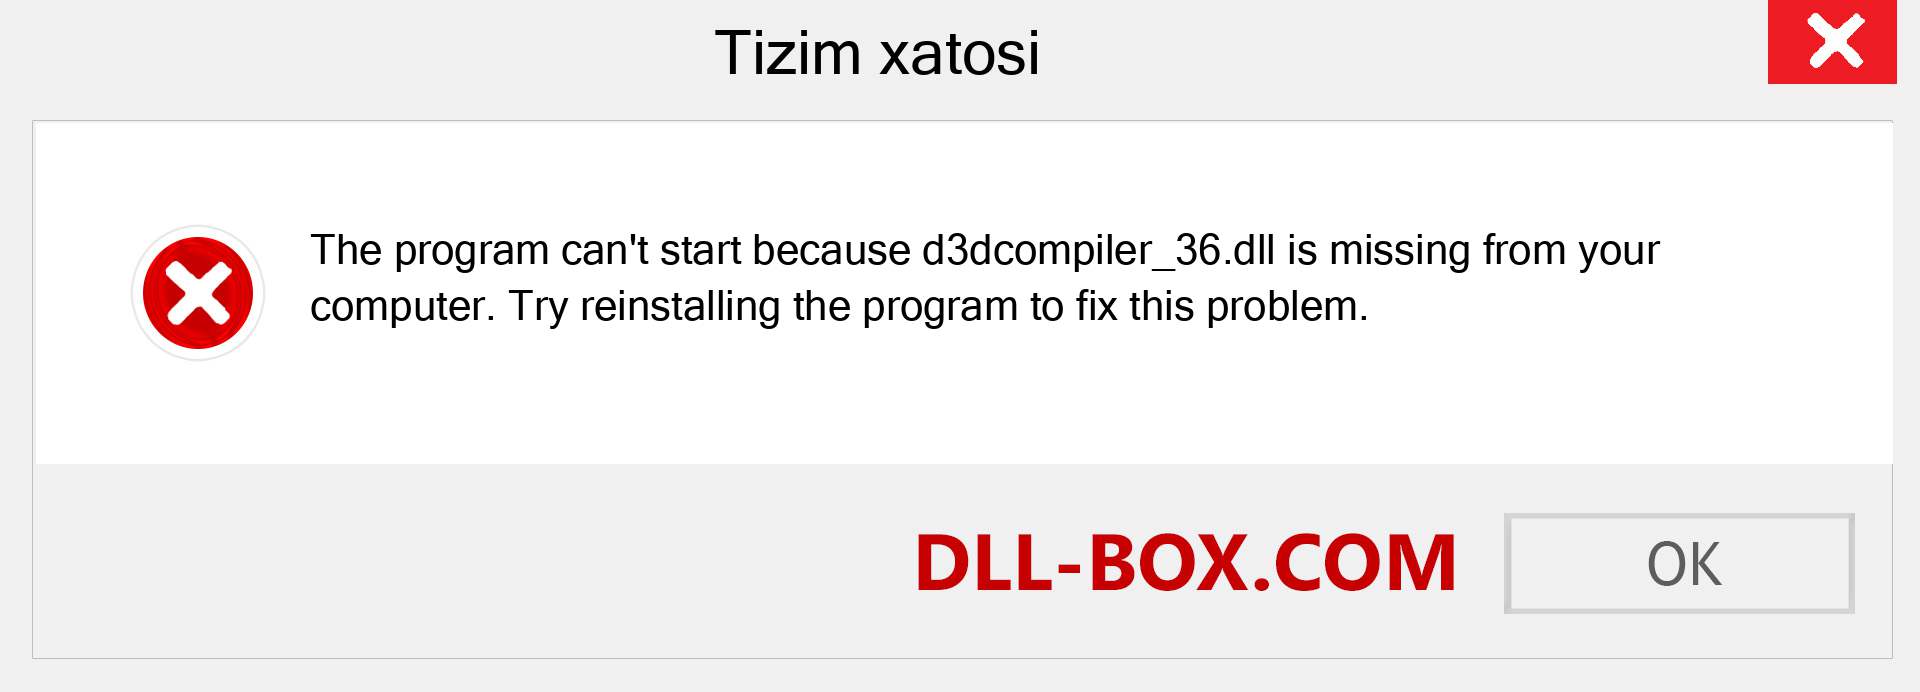 d3dcompiler_36.dll fayli yo'qolganmi?. Windows 7, 8, 10 uchun yuklab olish - Windowsda d3dcompiler_36 dll etishmayotgan xatoni tuzating, rasmlar, rasmlar